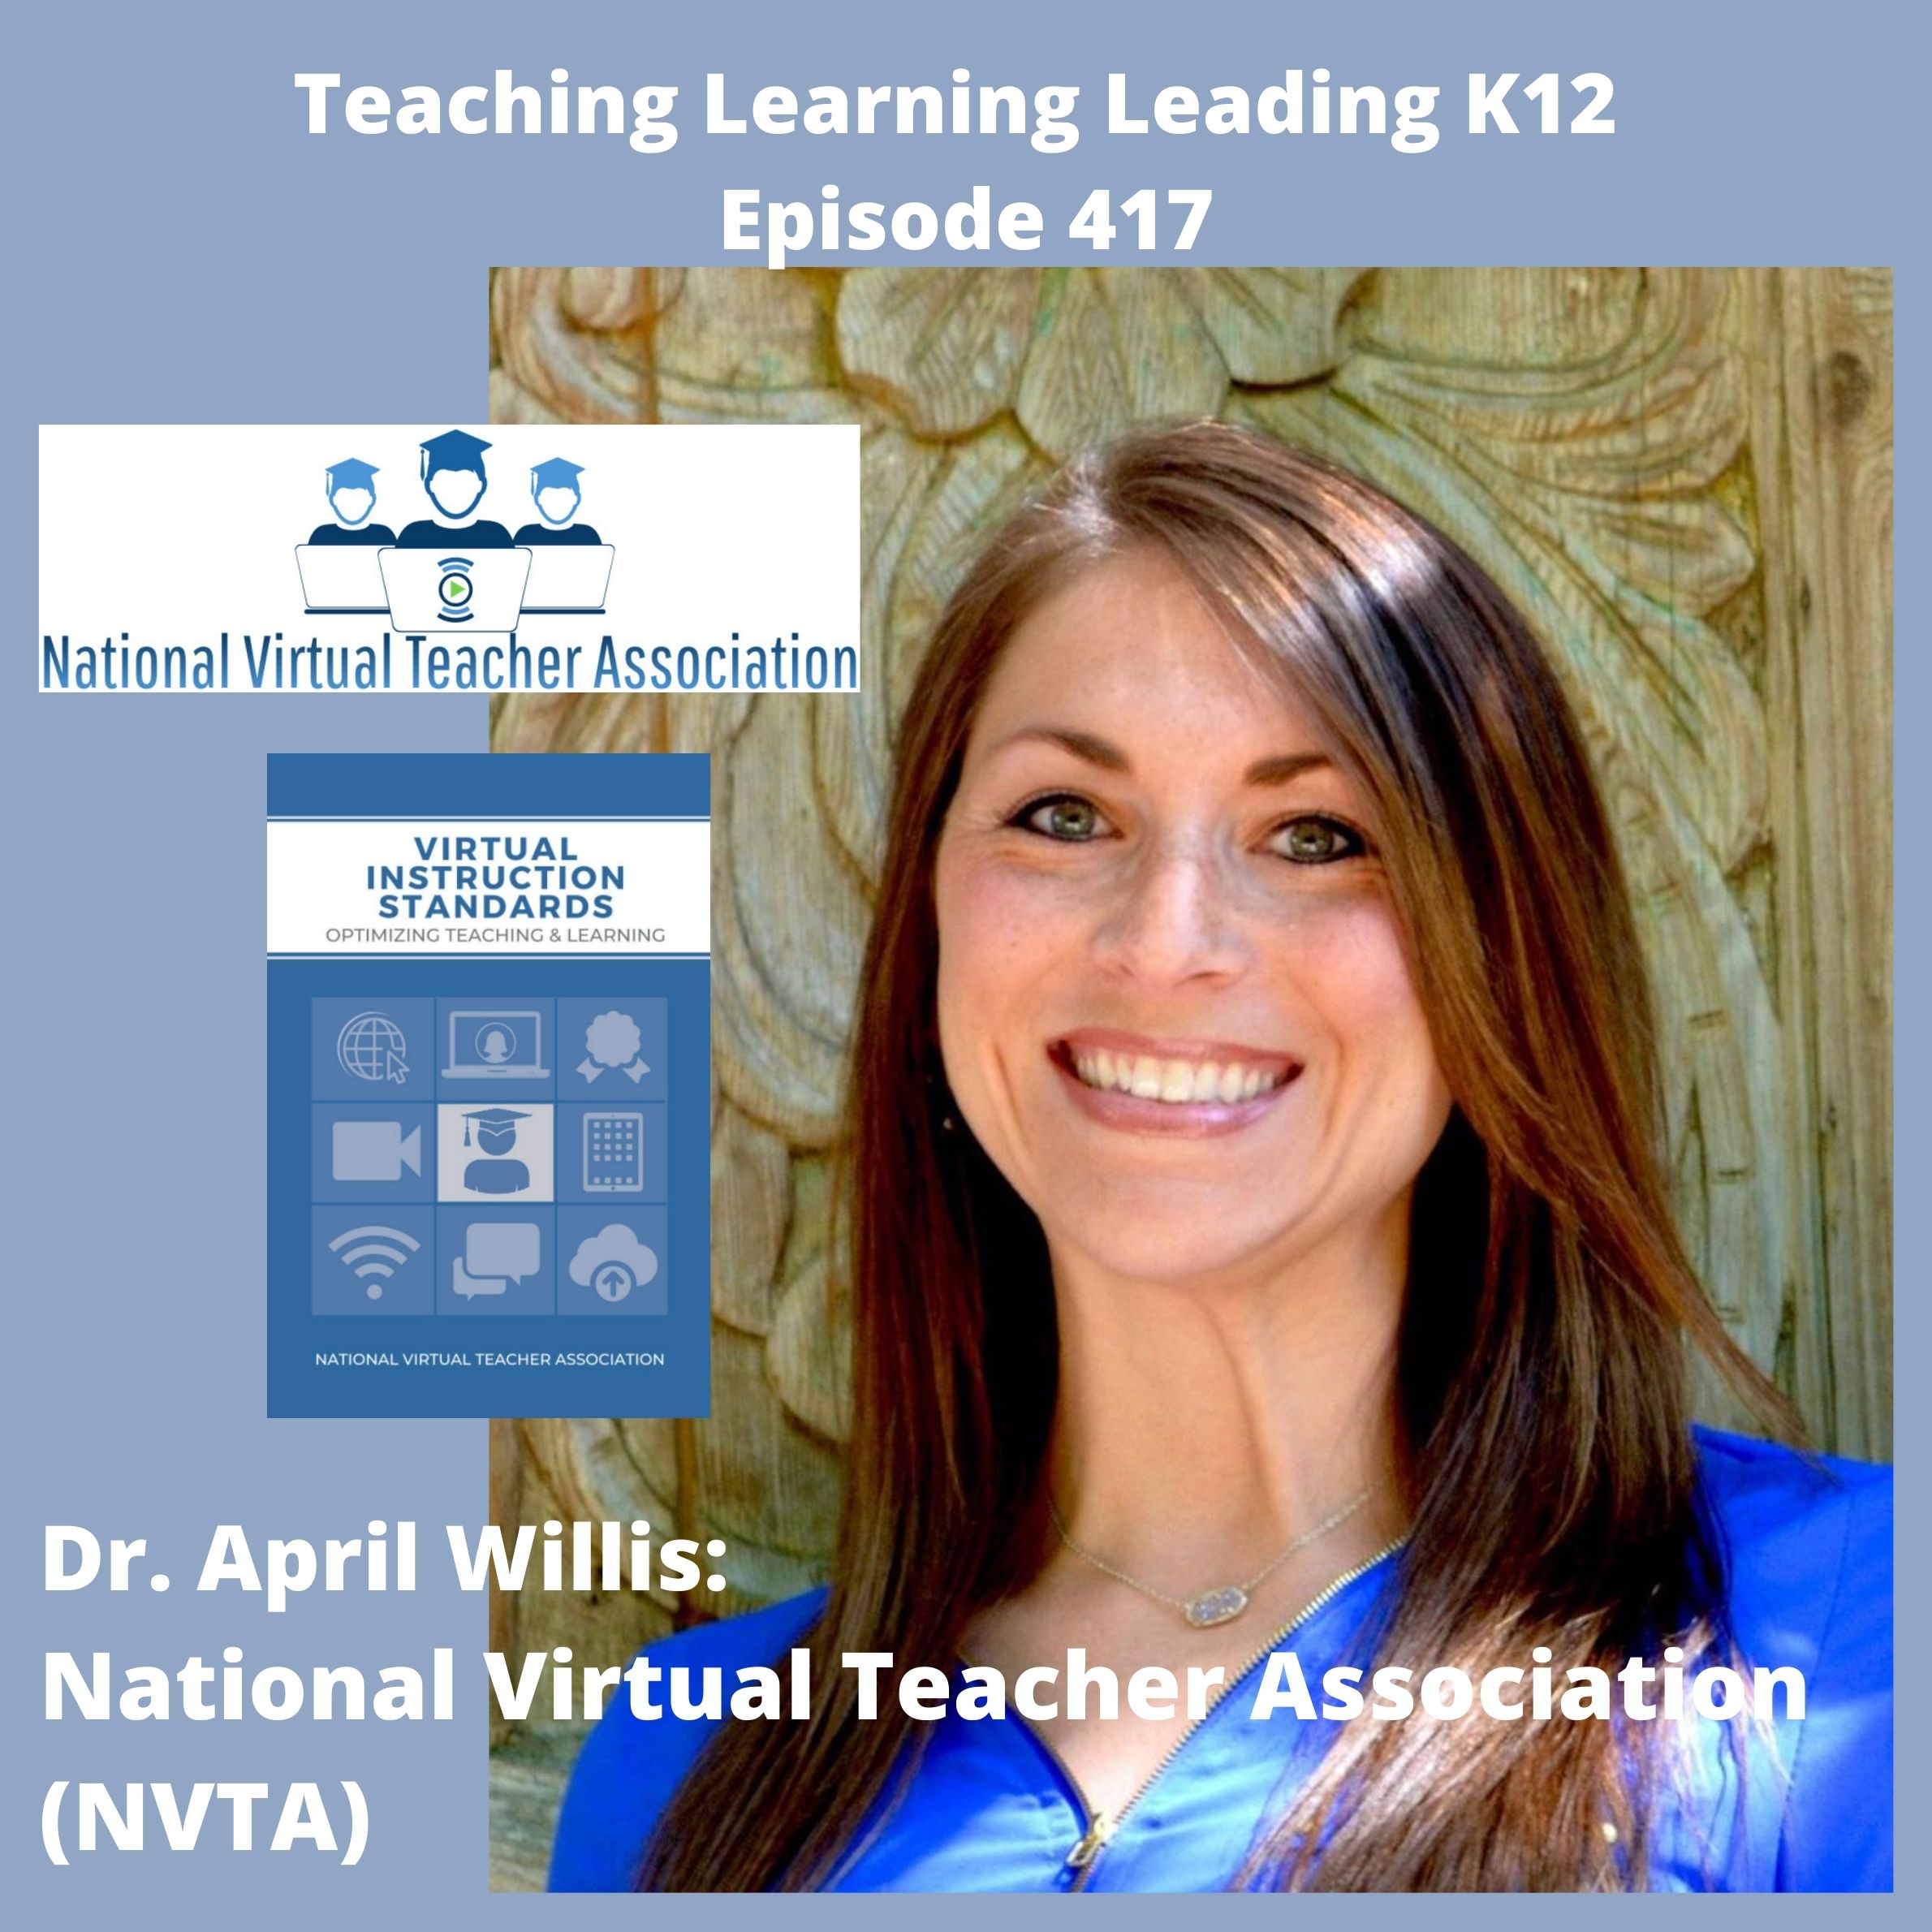 Dr. April Willis: The National Virtual Teacher Association (NVTA) - 417